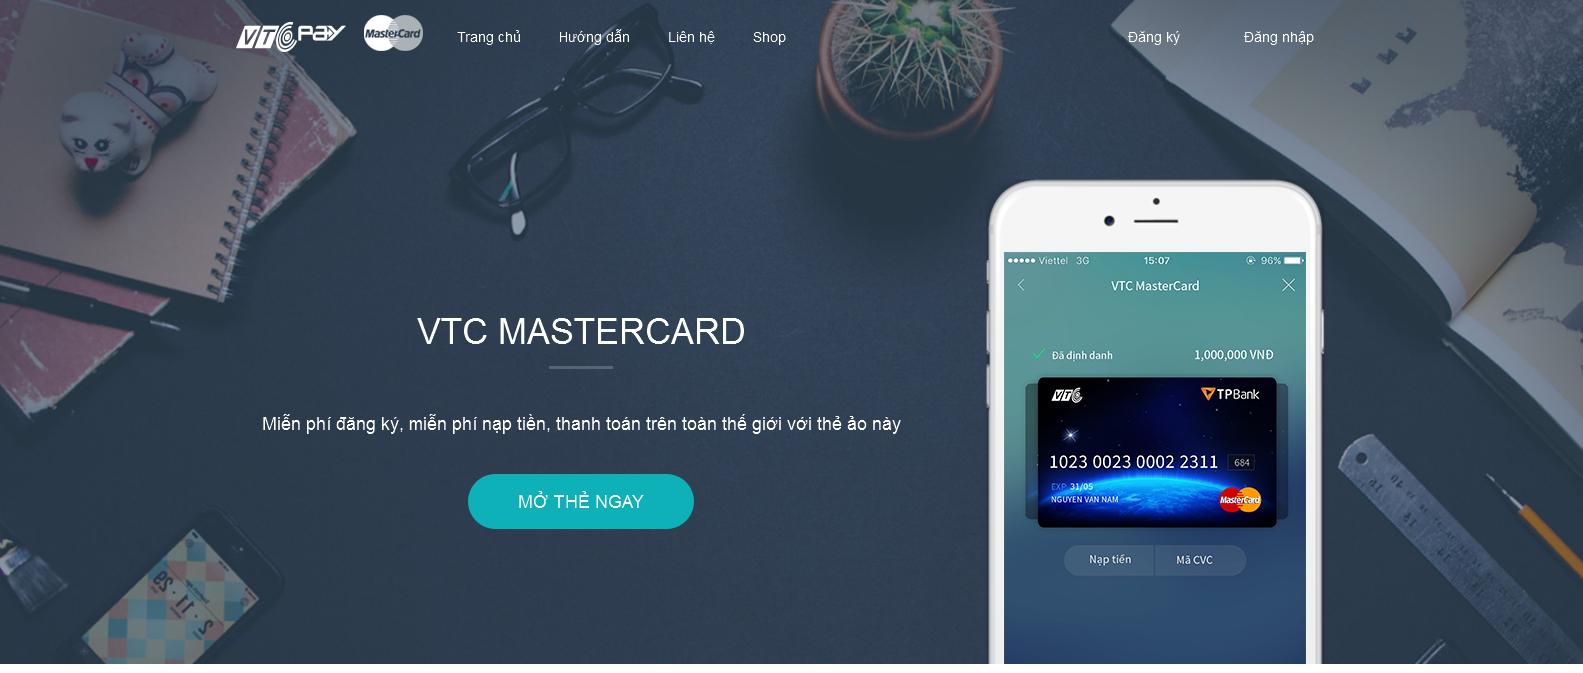 Giải quyết vấn đề không nhận thẻ Visa/MasterCard trên AppStore